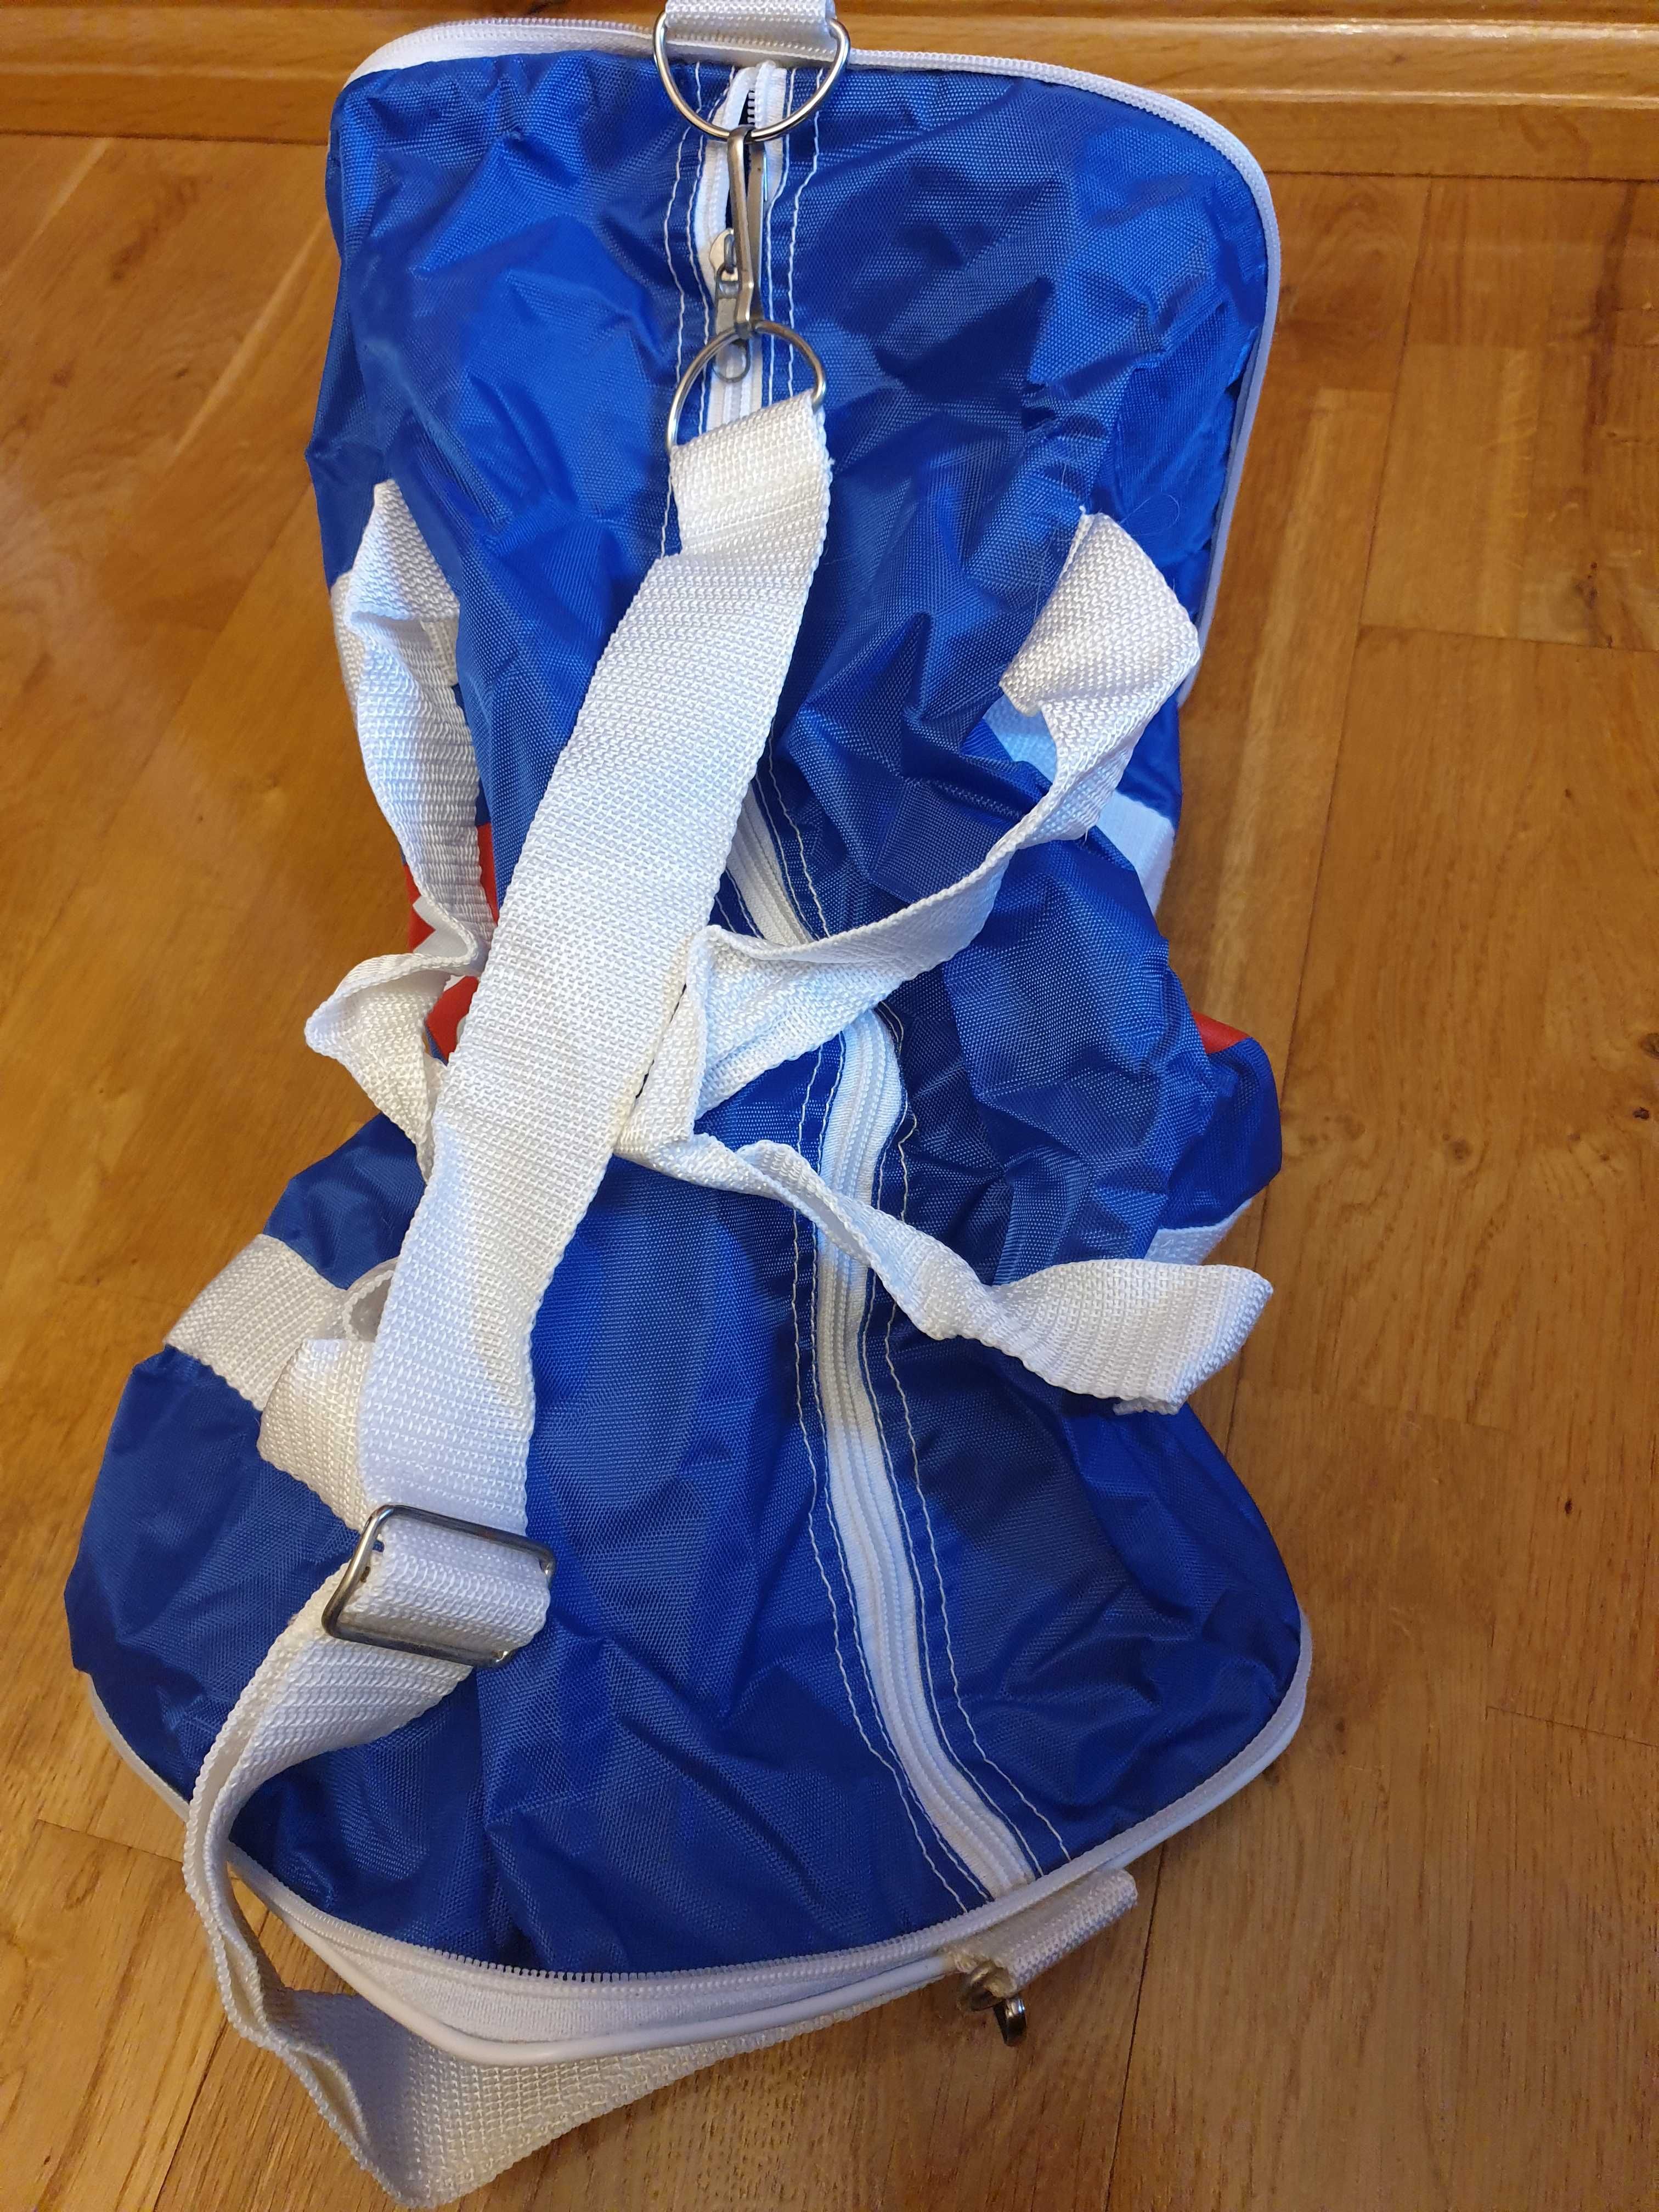 Torba sportowa TUI, podróżna torba skladana, niebieska na fitness